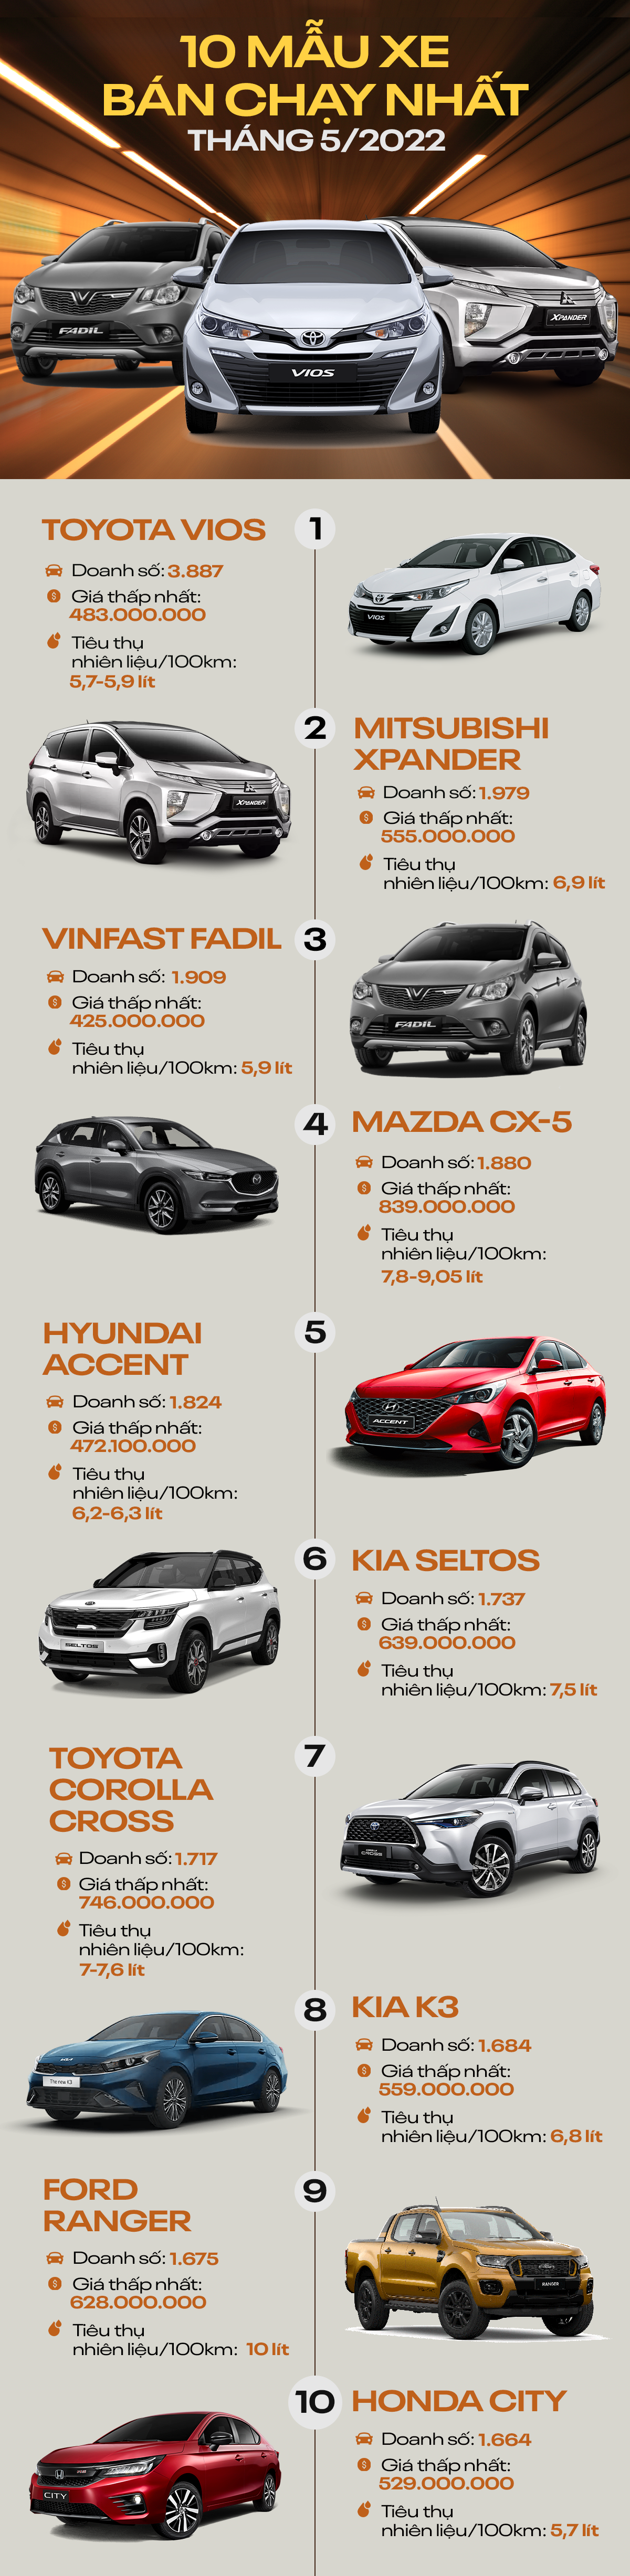 [Infographic] 10 mẫu ô tô bán chạy nhất tháng 5/2022 - Ảnh 1.